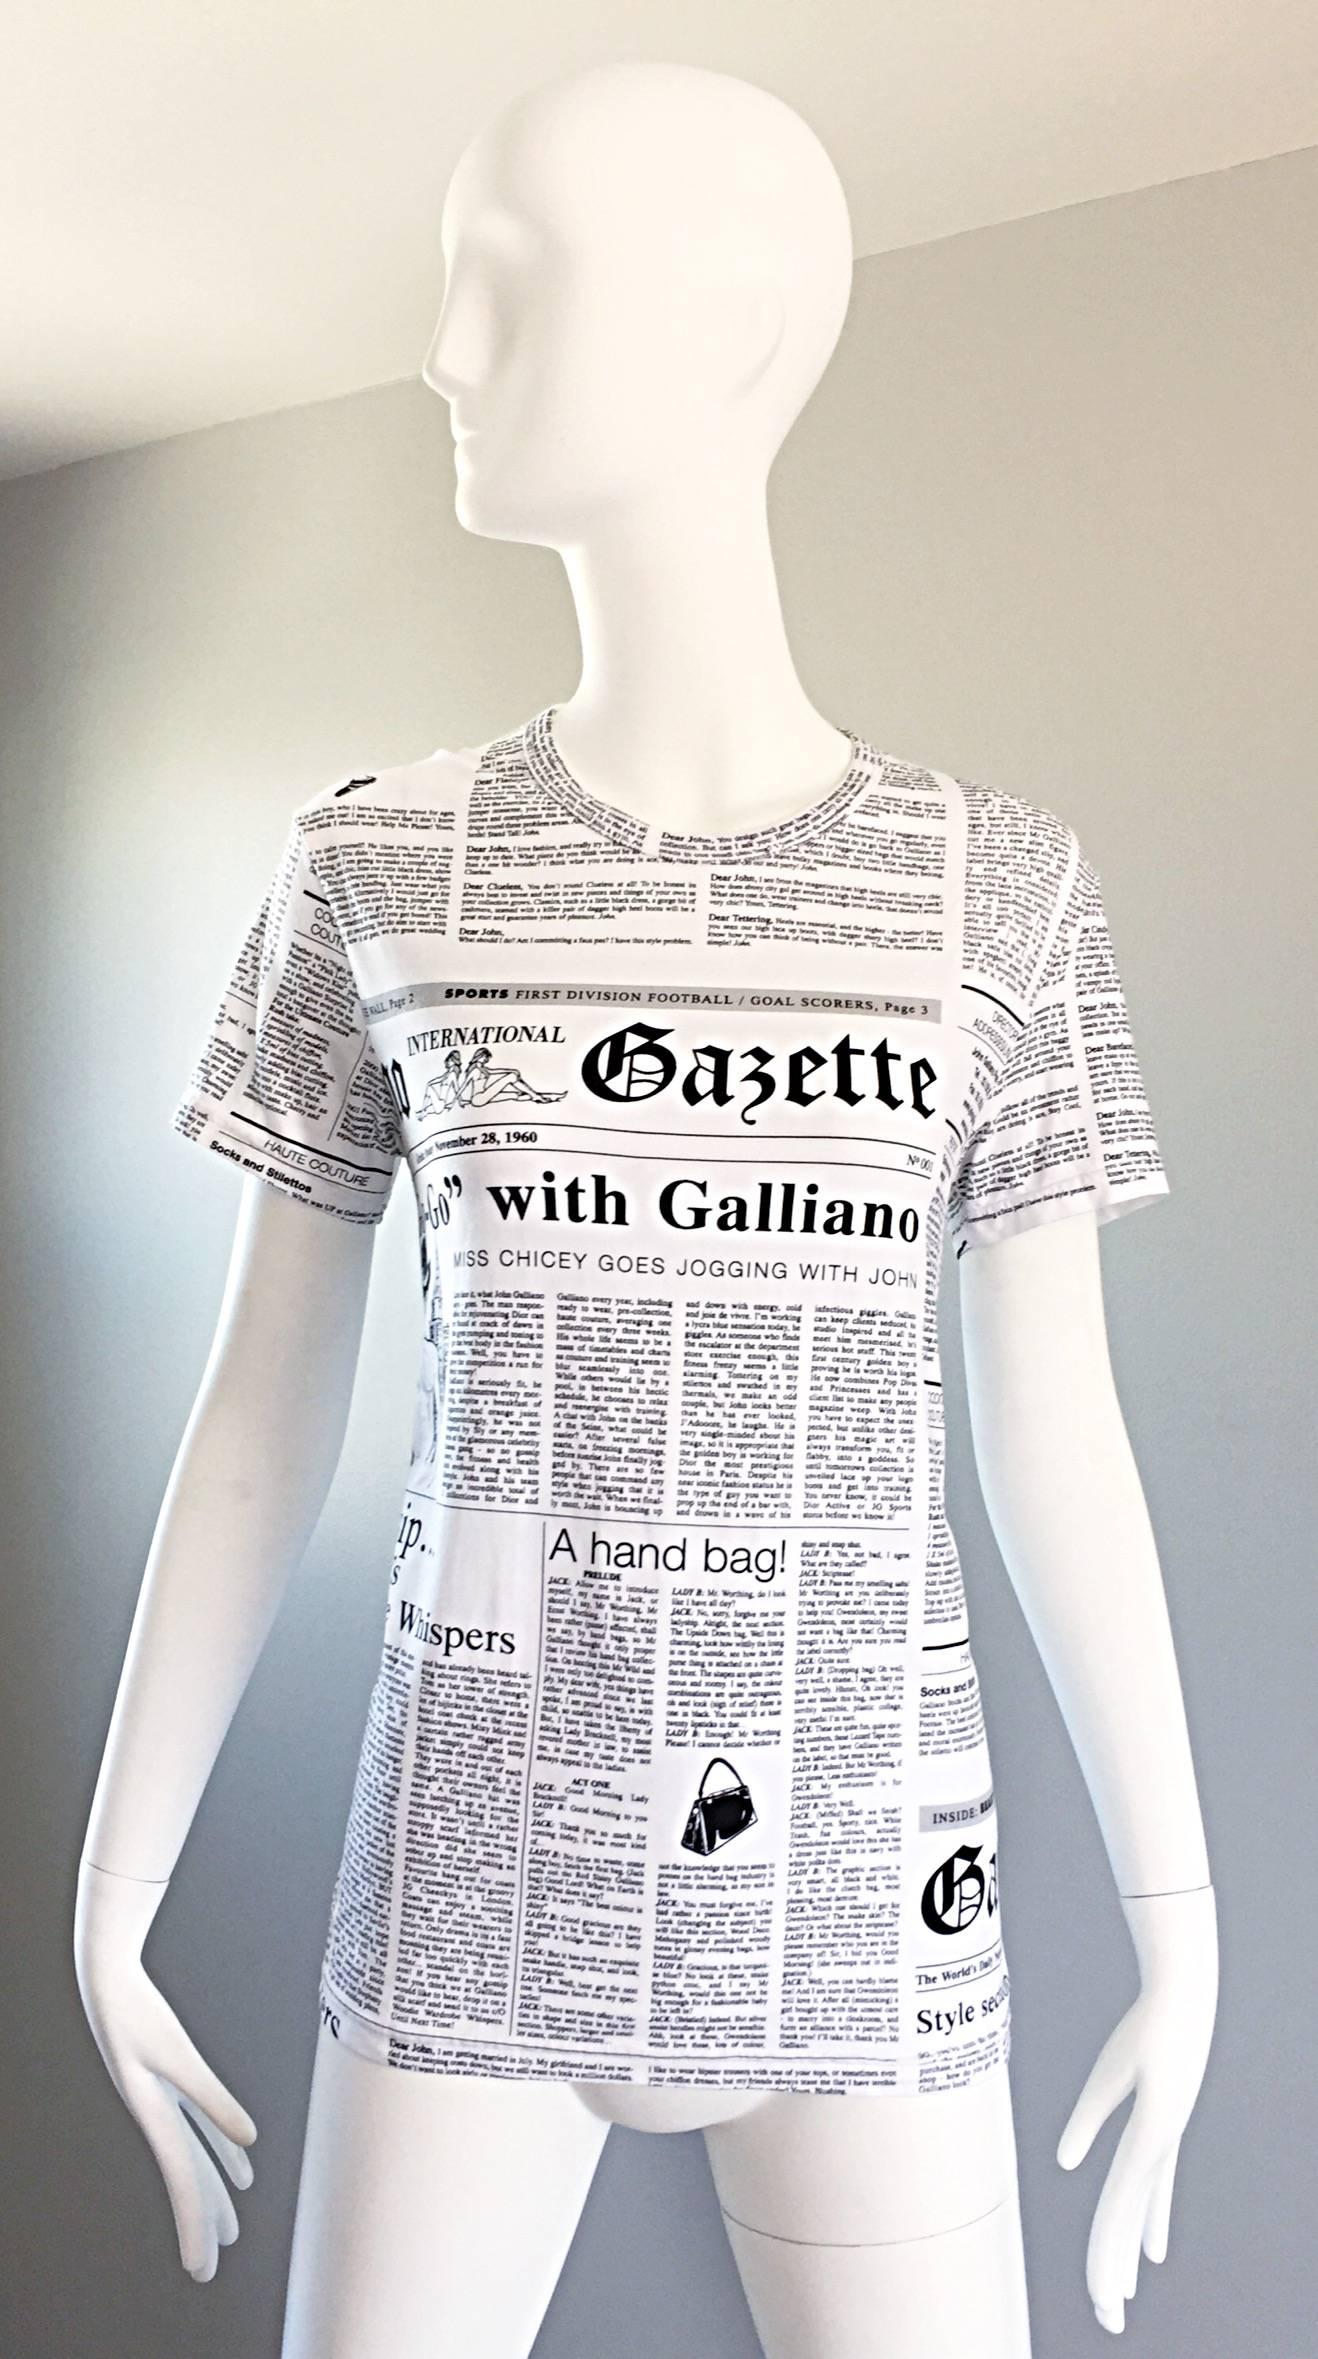 Gray Iconic John Galliano Unisex Newspaper Newsprint Black and White Tee T Shirt Top